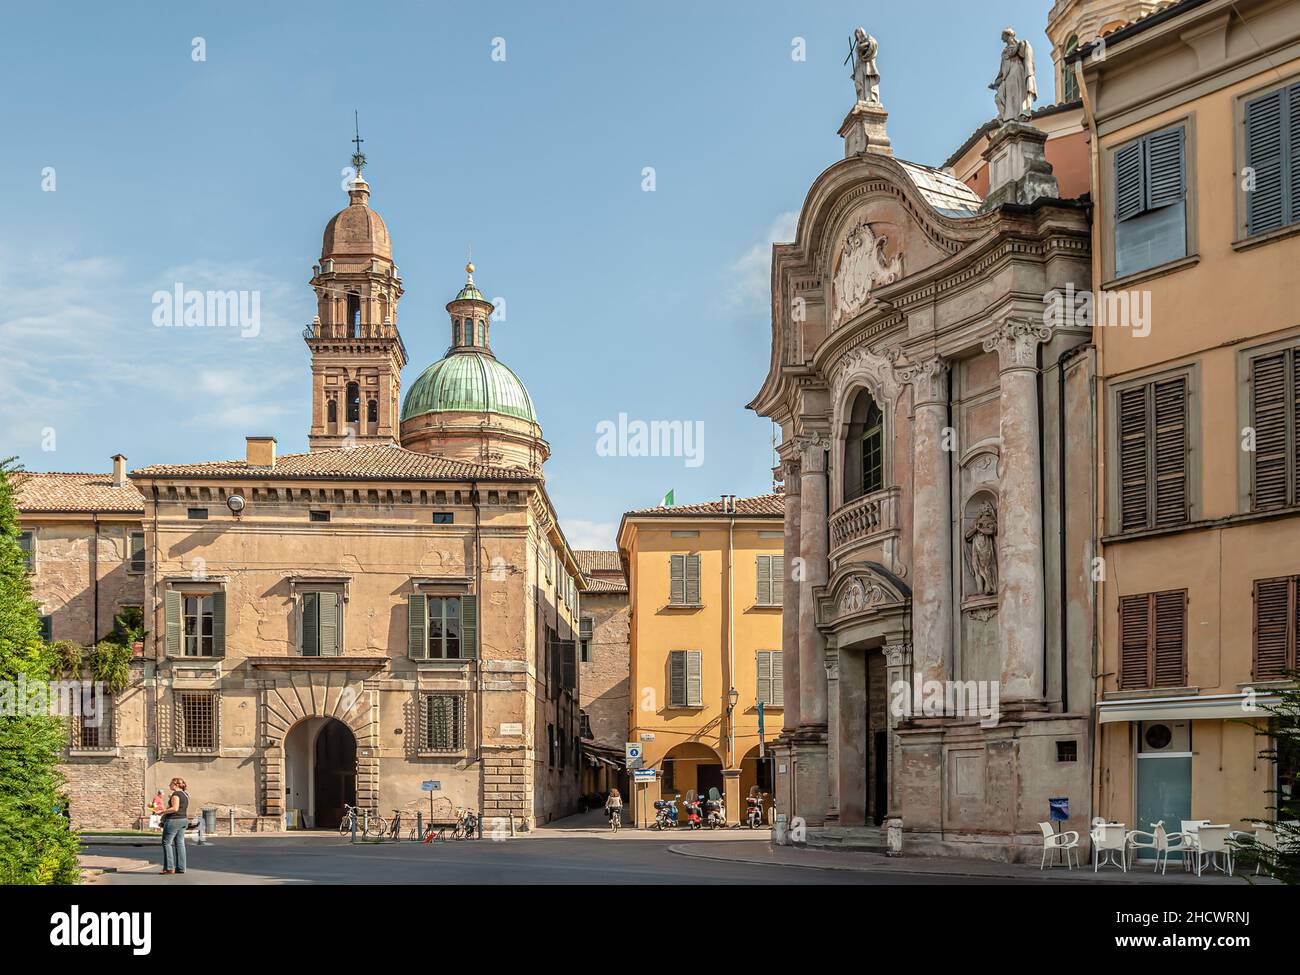 Piazzale Luigi Roversi and the Baroque church of San Giorgio in Reggio Emilia, North Italy. Stock Photo